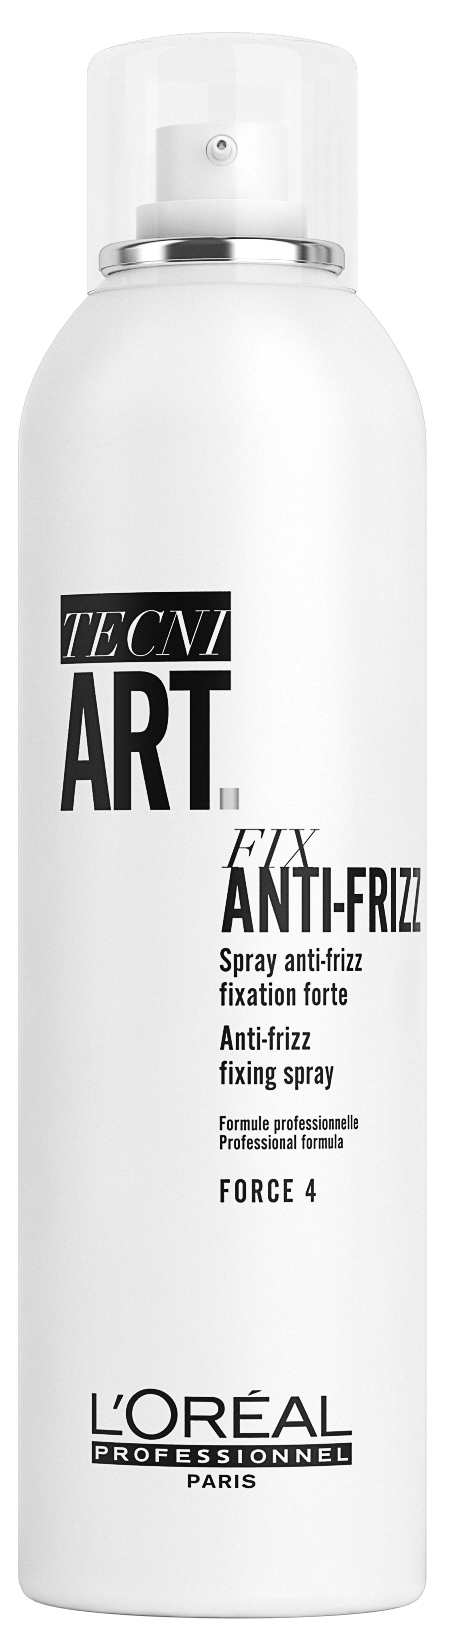 Tecni art Anti Frizz Spray